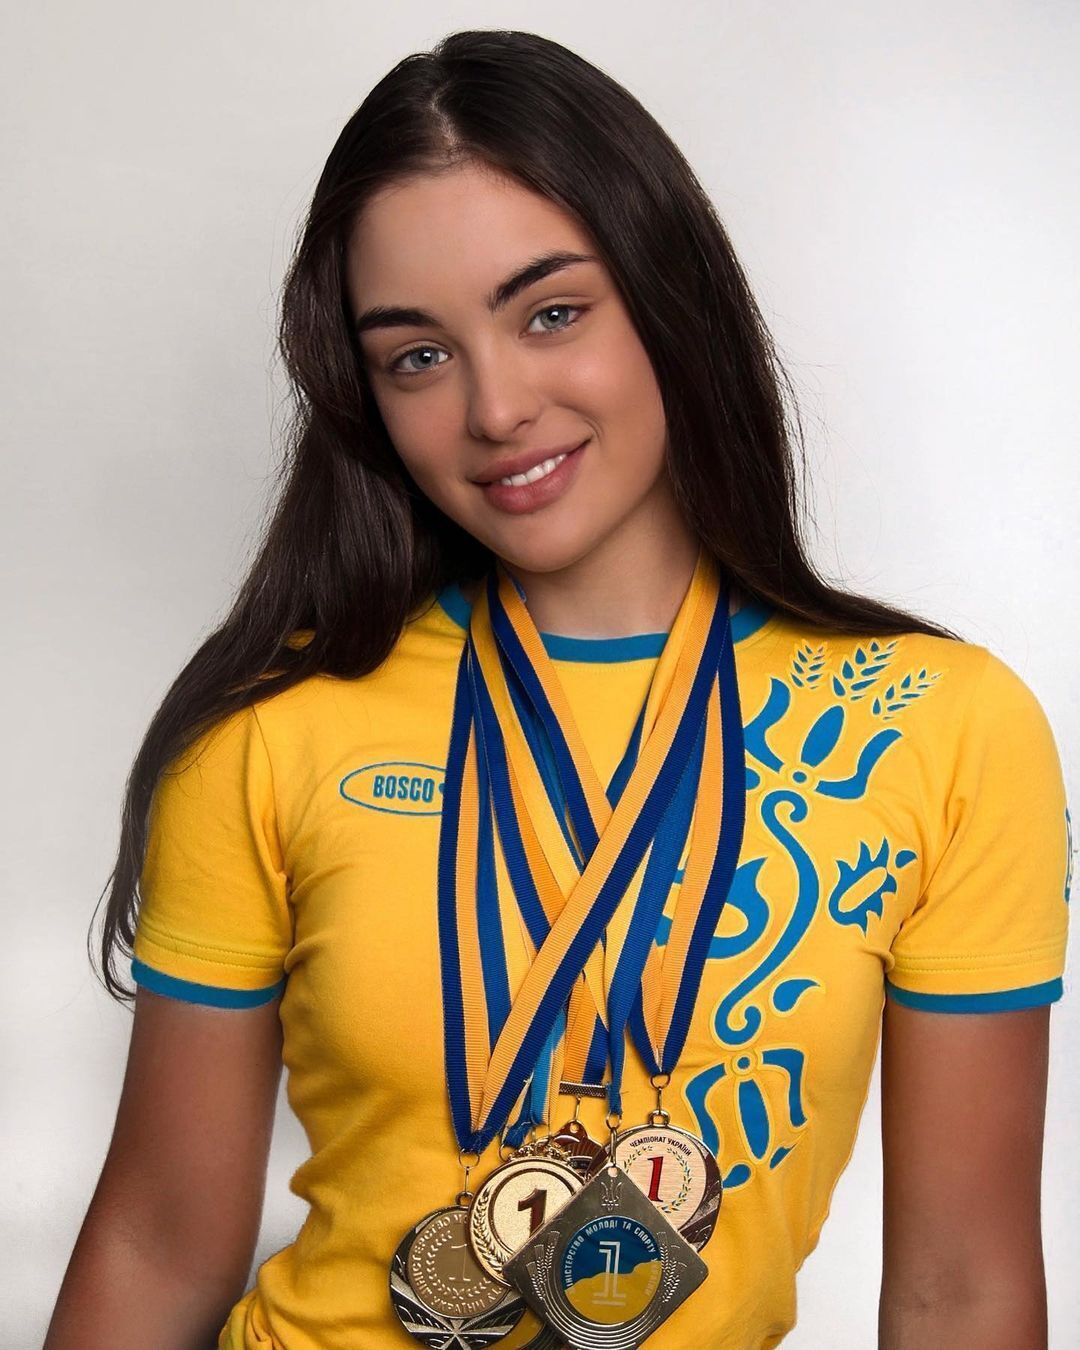 "Полечу в Дубай, а ви ховатиметеся у підвалах": чемпіонка України образила дніпрян і отримала відповідь